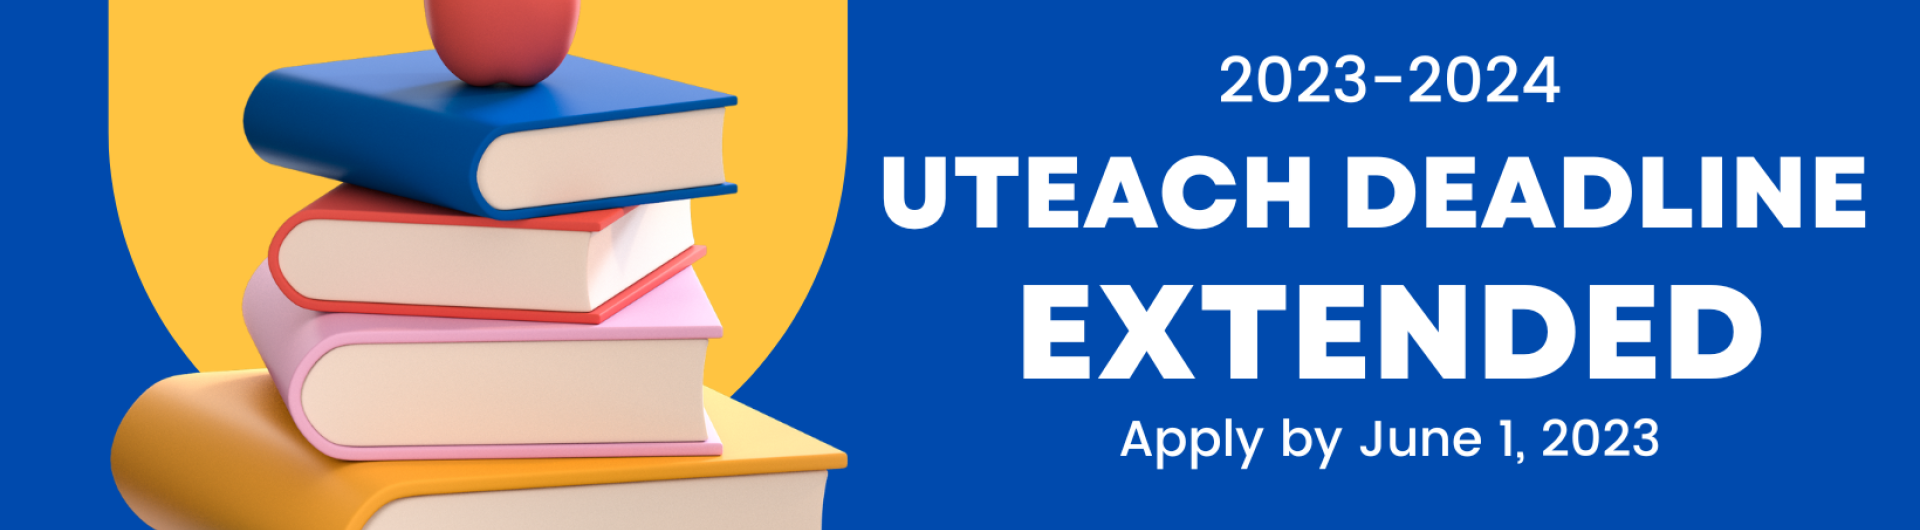 UTEACH Deadline Extended to June 1, 2023